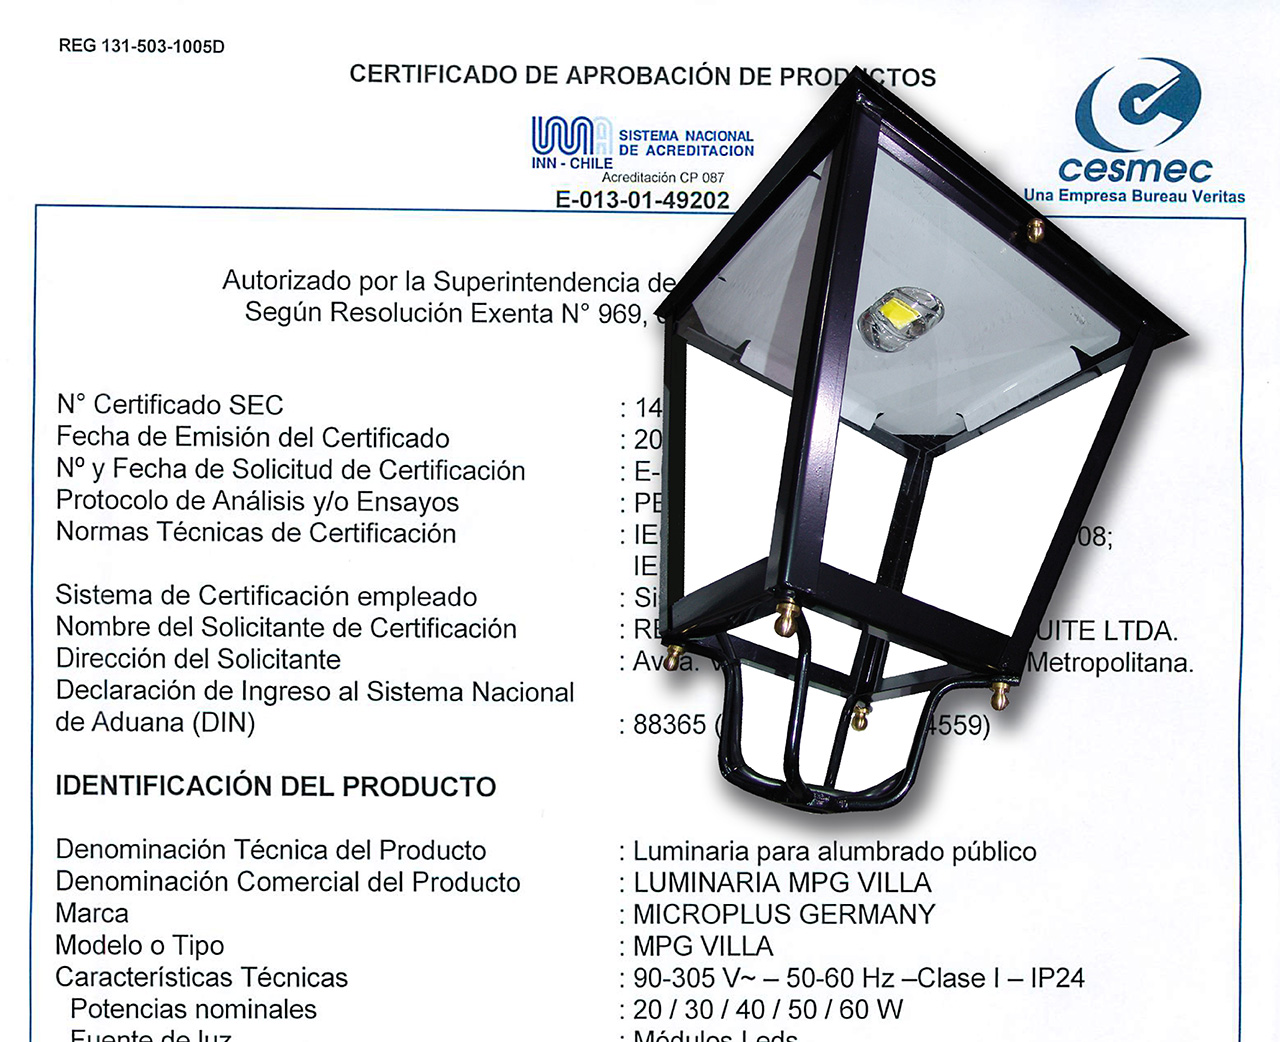 Microplus obtiene la certificación para las luminarias Villa